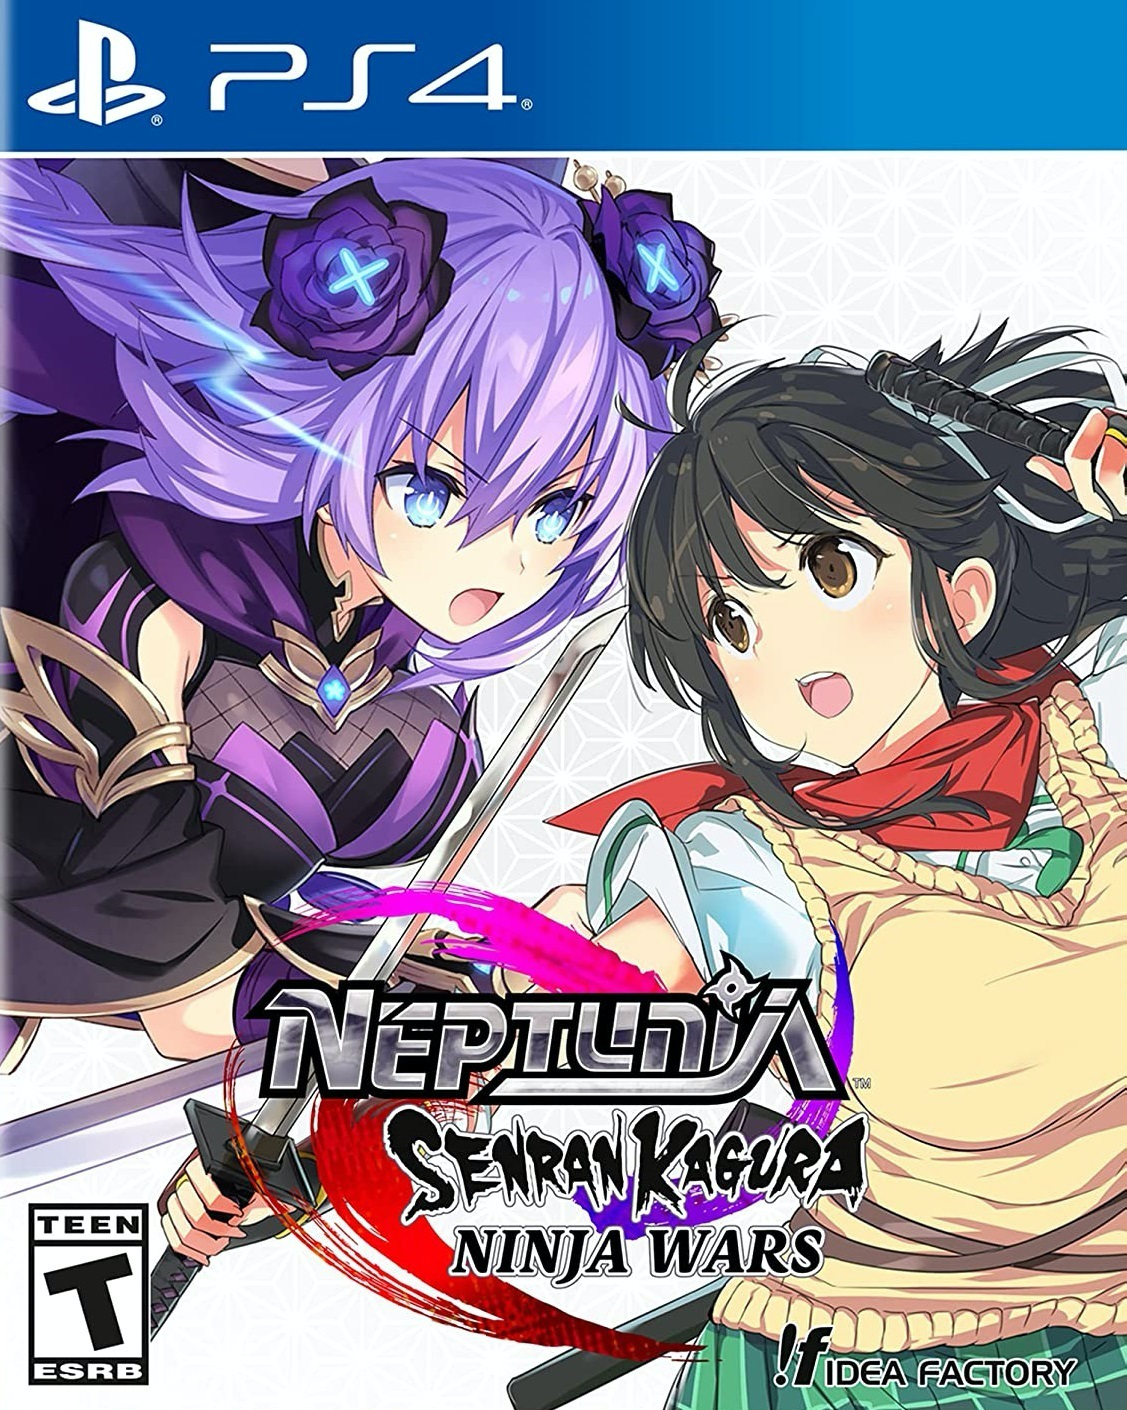 Neptunia Senran Kagura: Ninja Wars - PS4